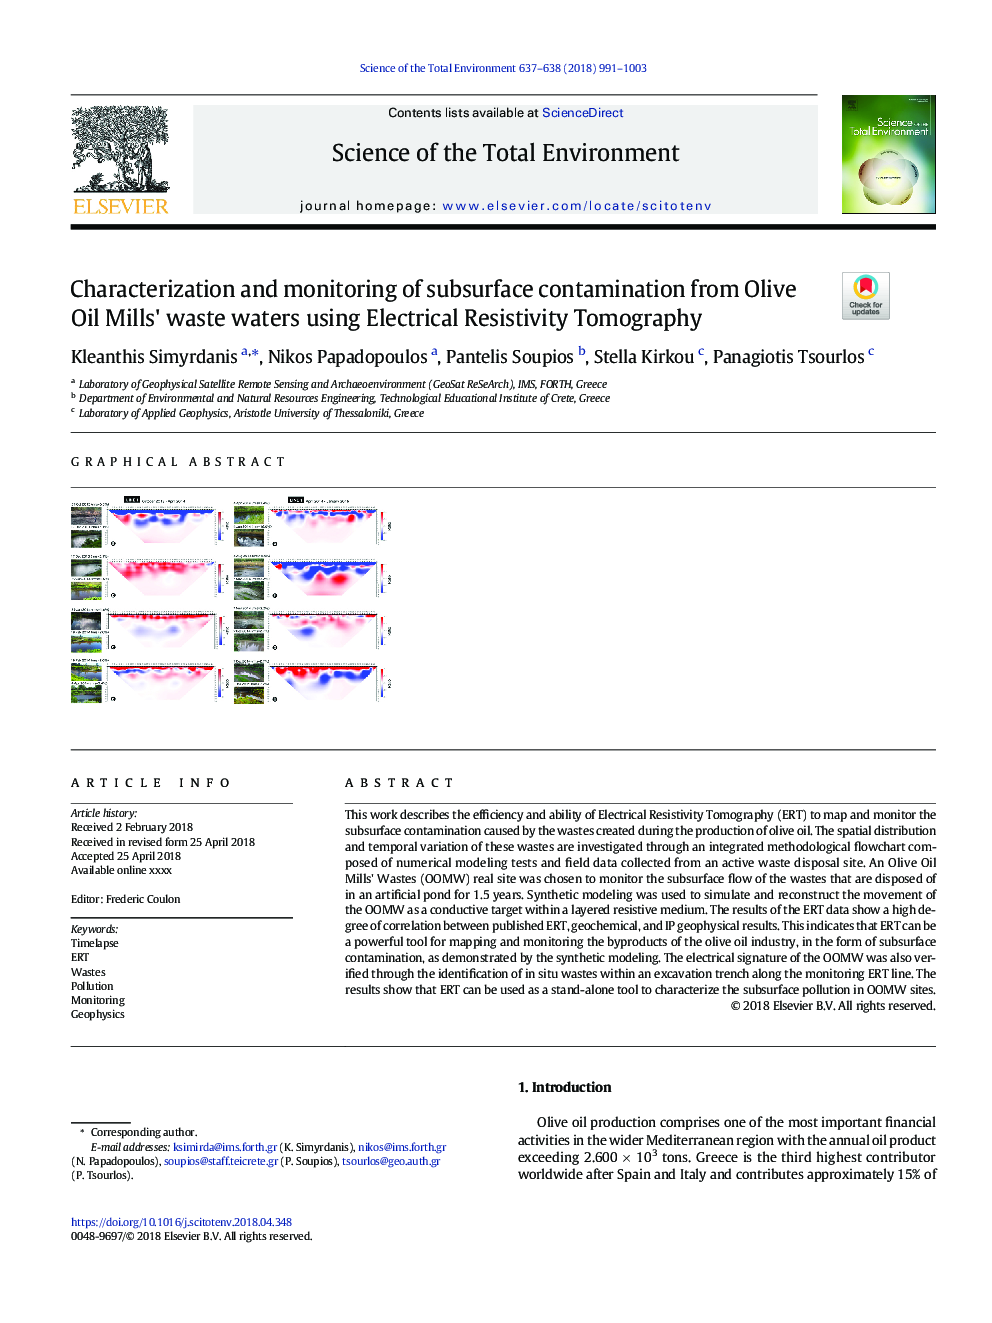 شناسایی و نظارت بر آلودگی زیر سطحی از فاضلاب های روغن زیتون با استفاده از توموگرافی مقاومت الکتریکی 